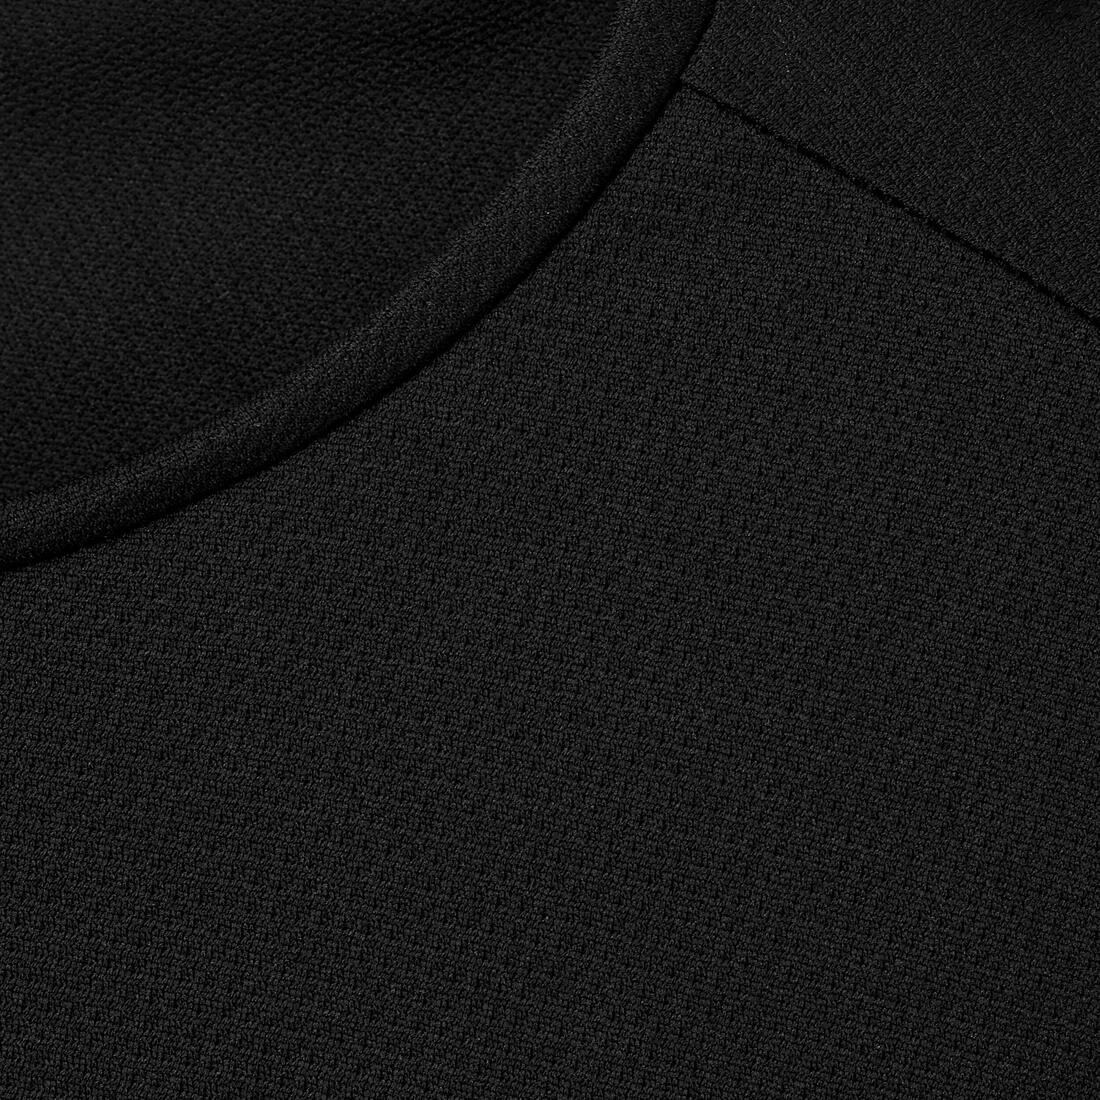 KALENJI(カレンジ) ランニング Tシャツ 透湿性 DRY メンズ